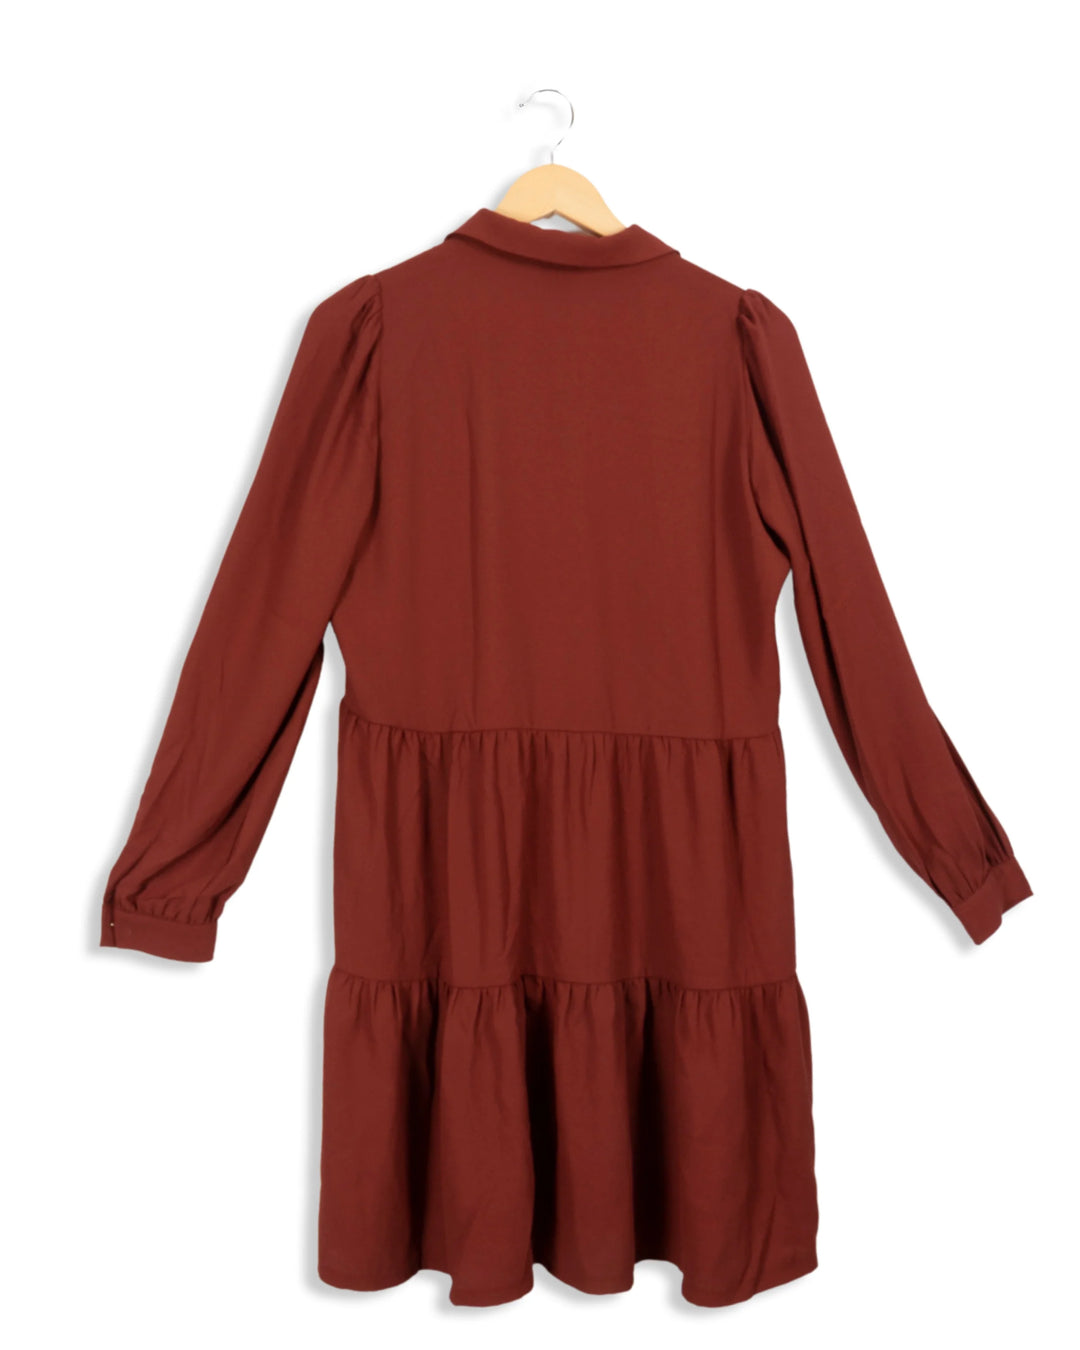 Kurzes burgunderfarbenes Kleid – S (verifiziert von skupbm)